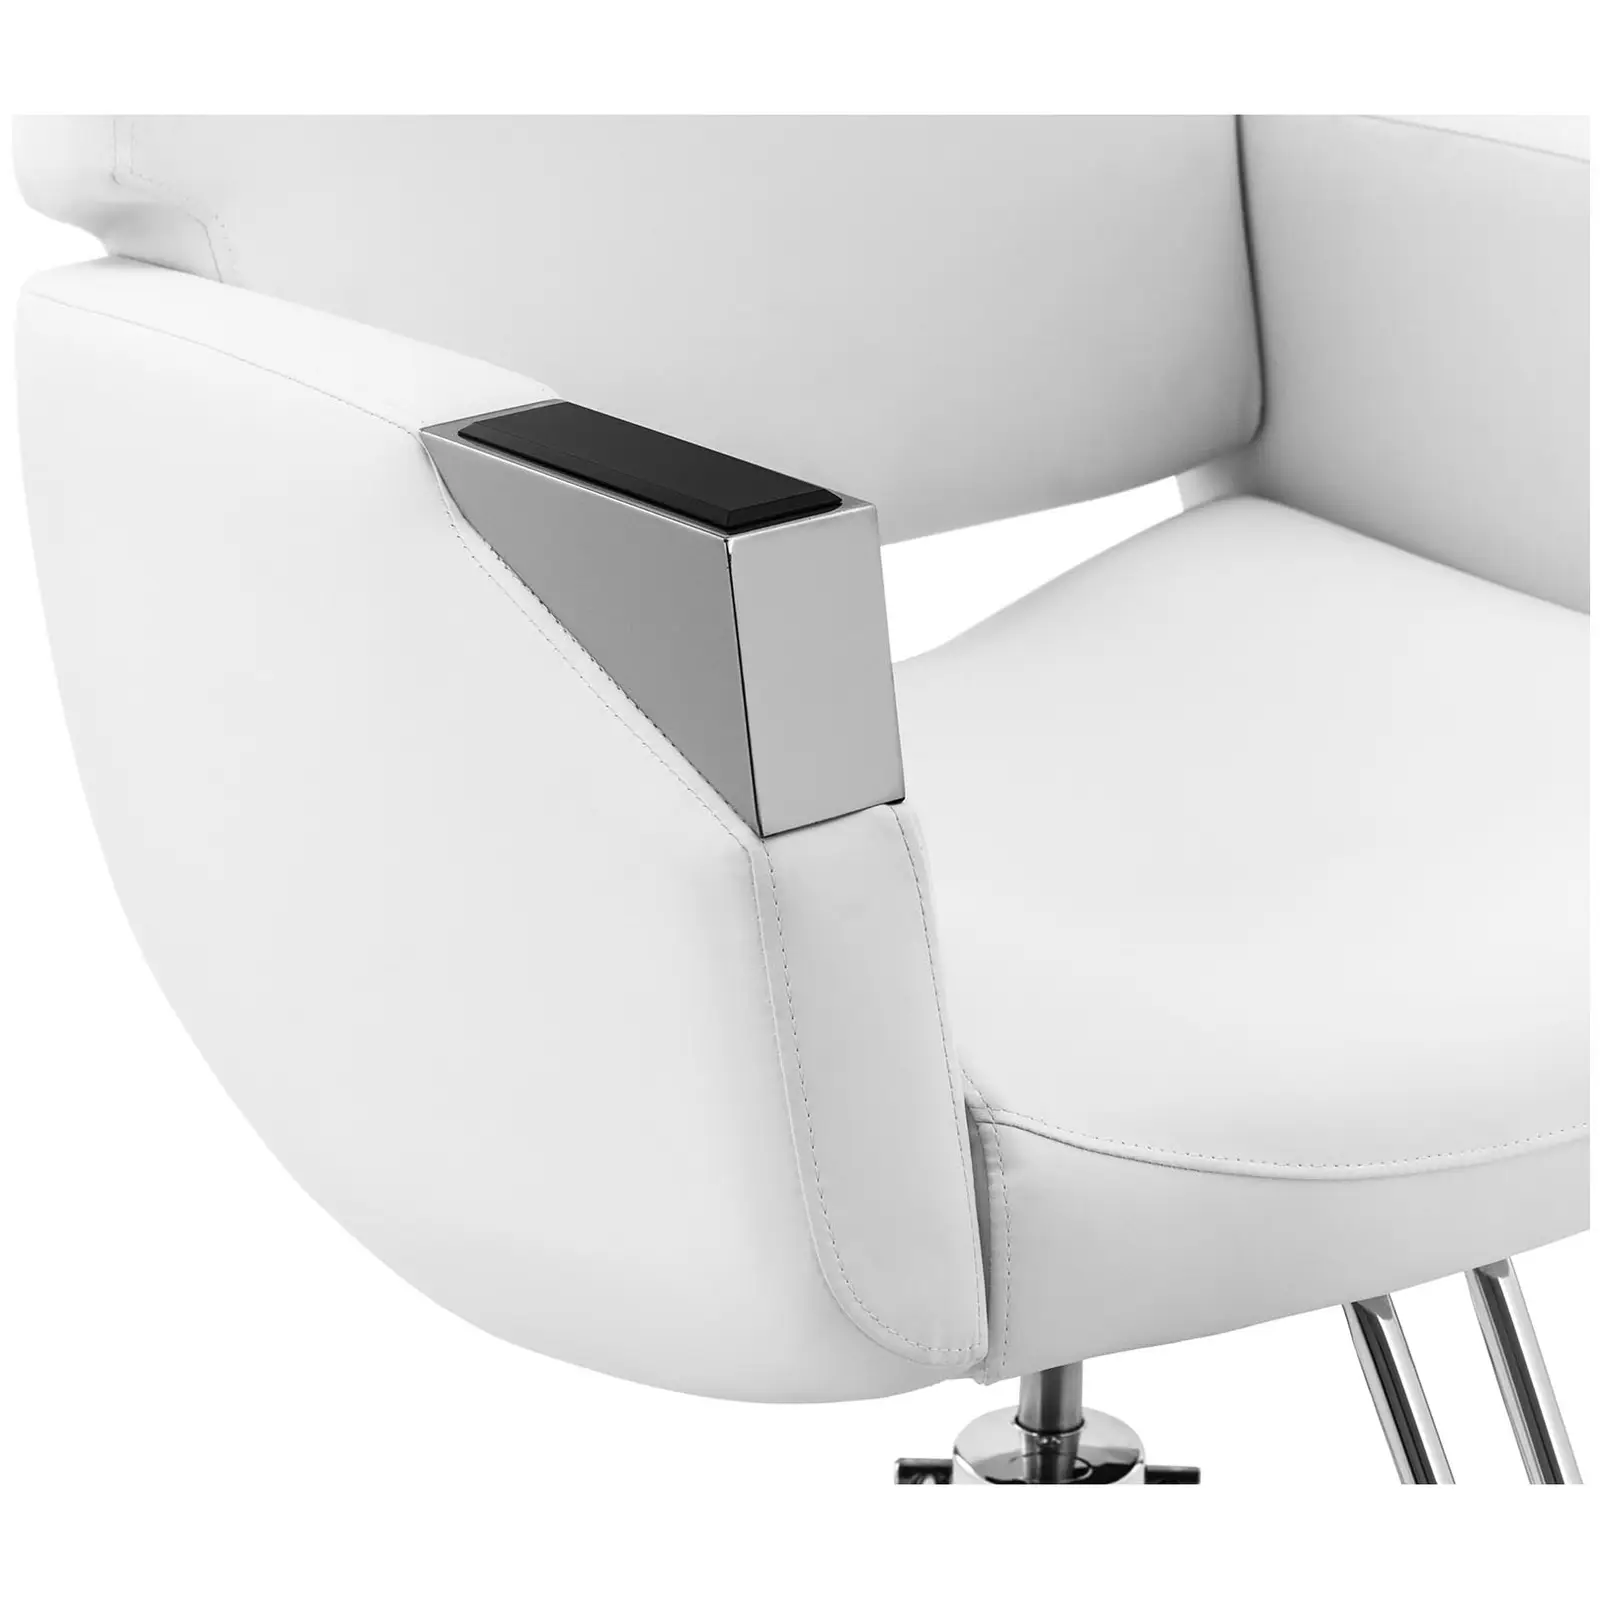 Cadeira de cabeleireiro com apoio para os pés - 880-1030 mm - 200 kg - Prata, Branco